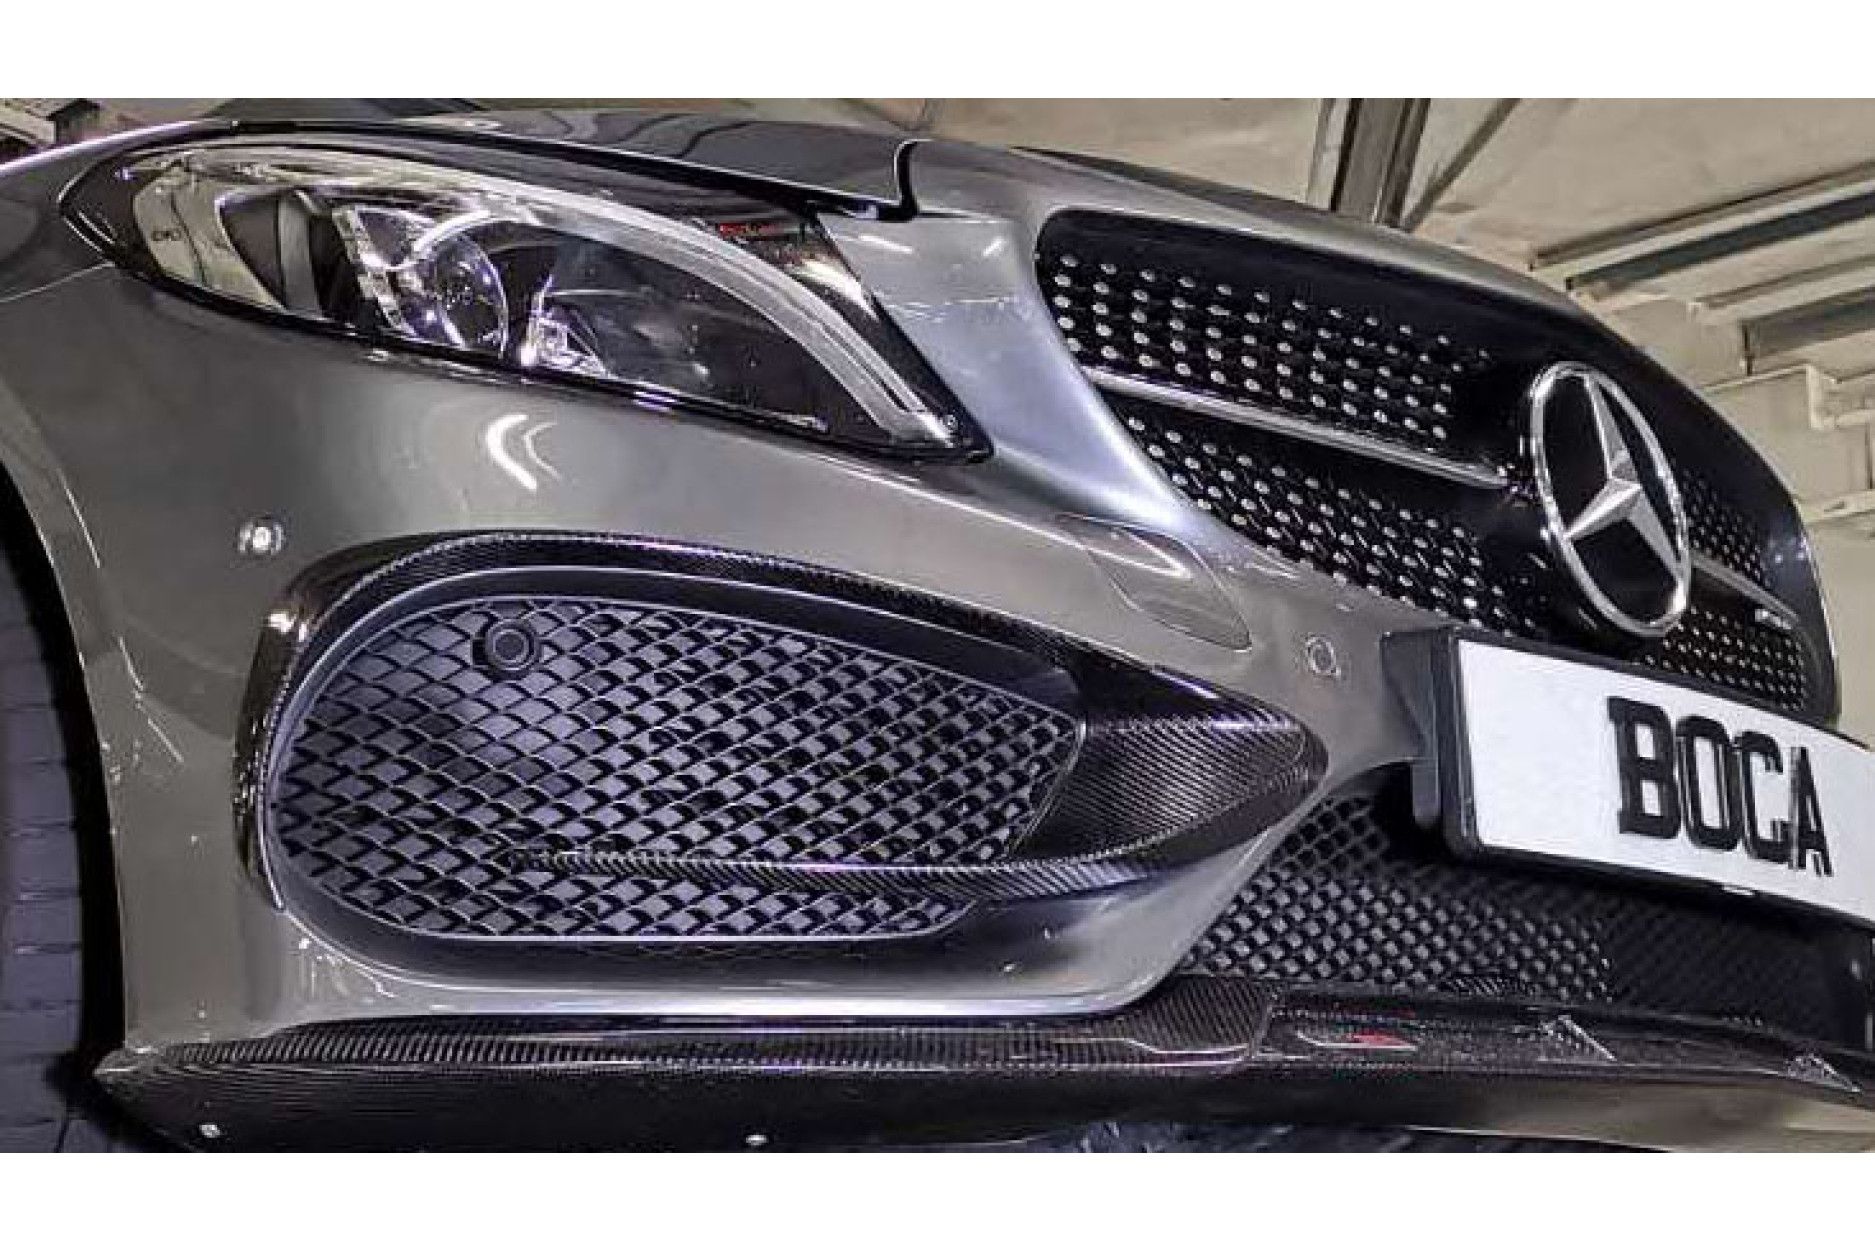 Boca Carbon Frontschürzen Verkleidung Mercurie für Mercedes W205